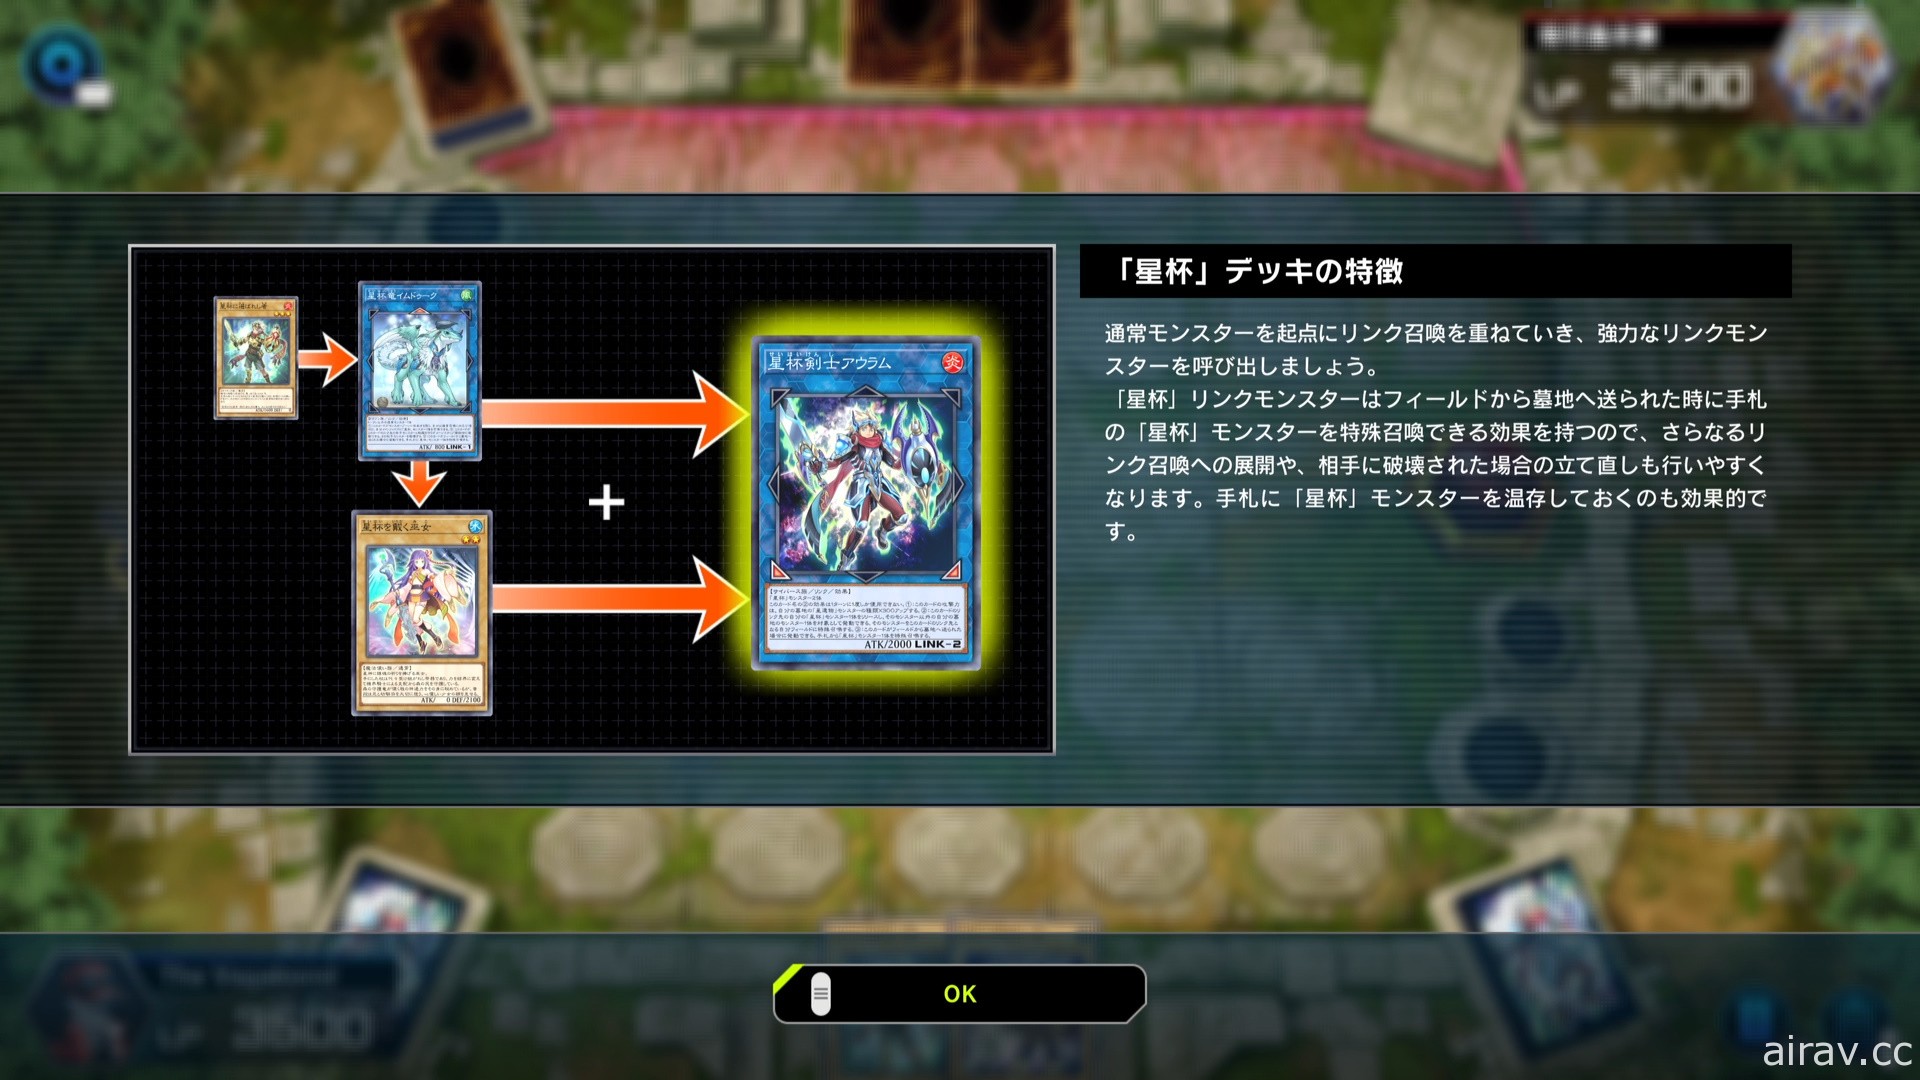 【TGS 21】《遊戲王 Master Duel》單人模式體驗 從卡片劇情介紹中學習牌組與召喚方式